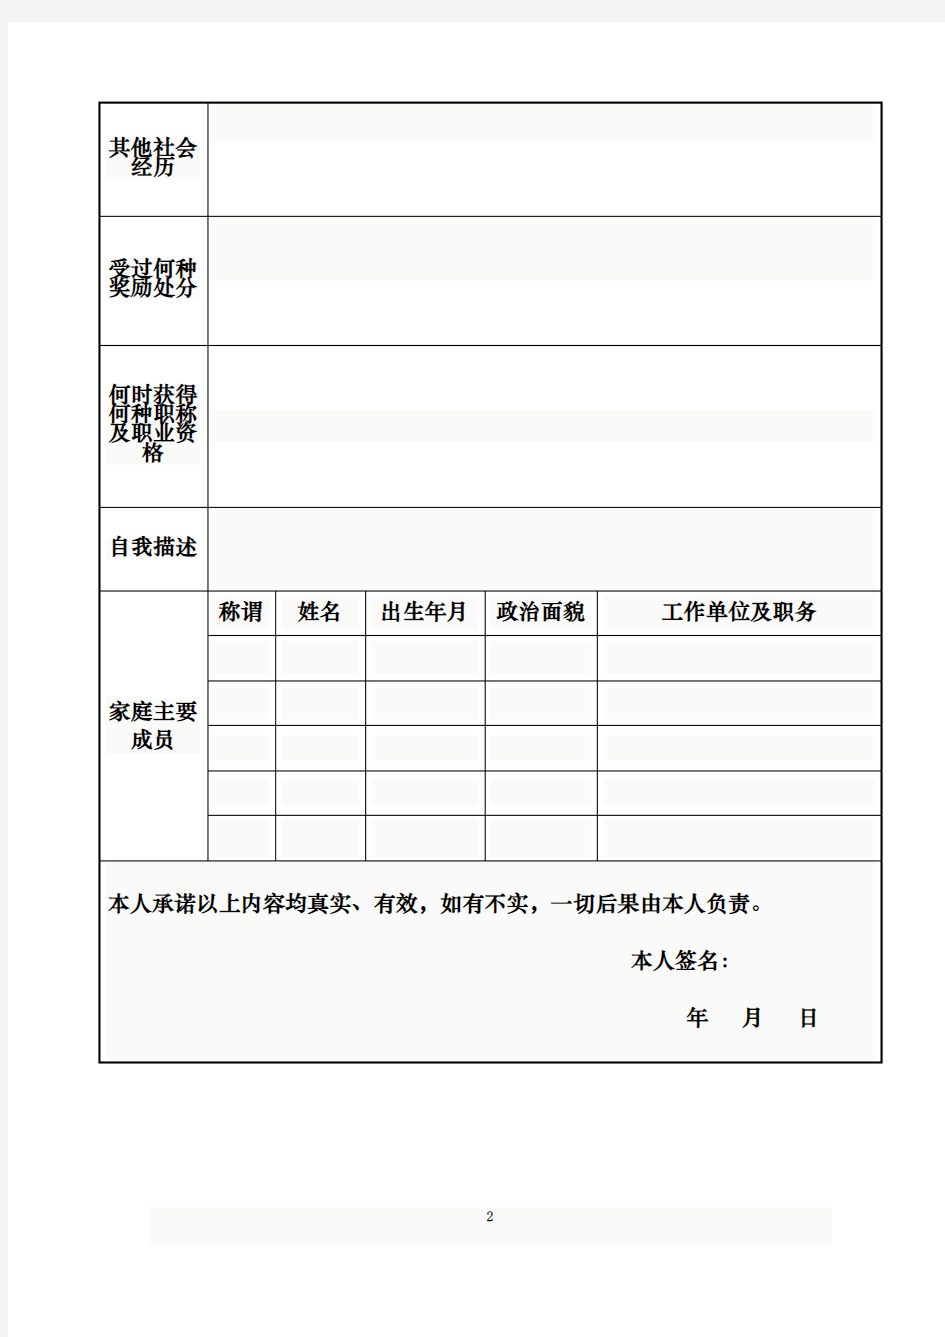 上海少年儿童图书馆应聘人员登记表